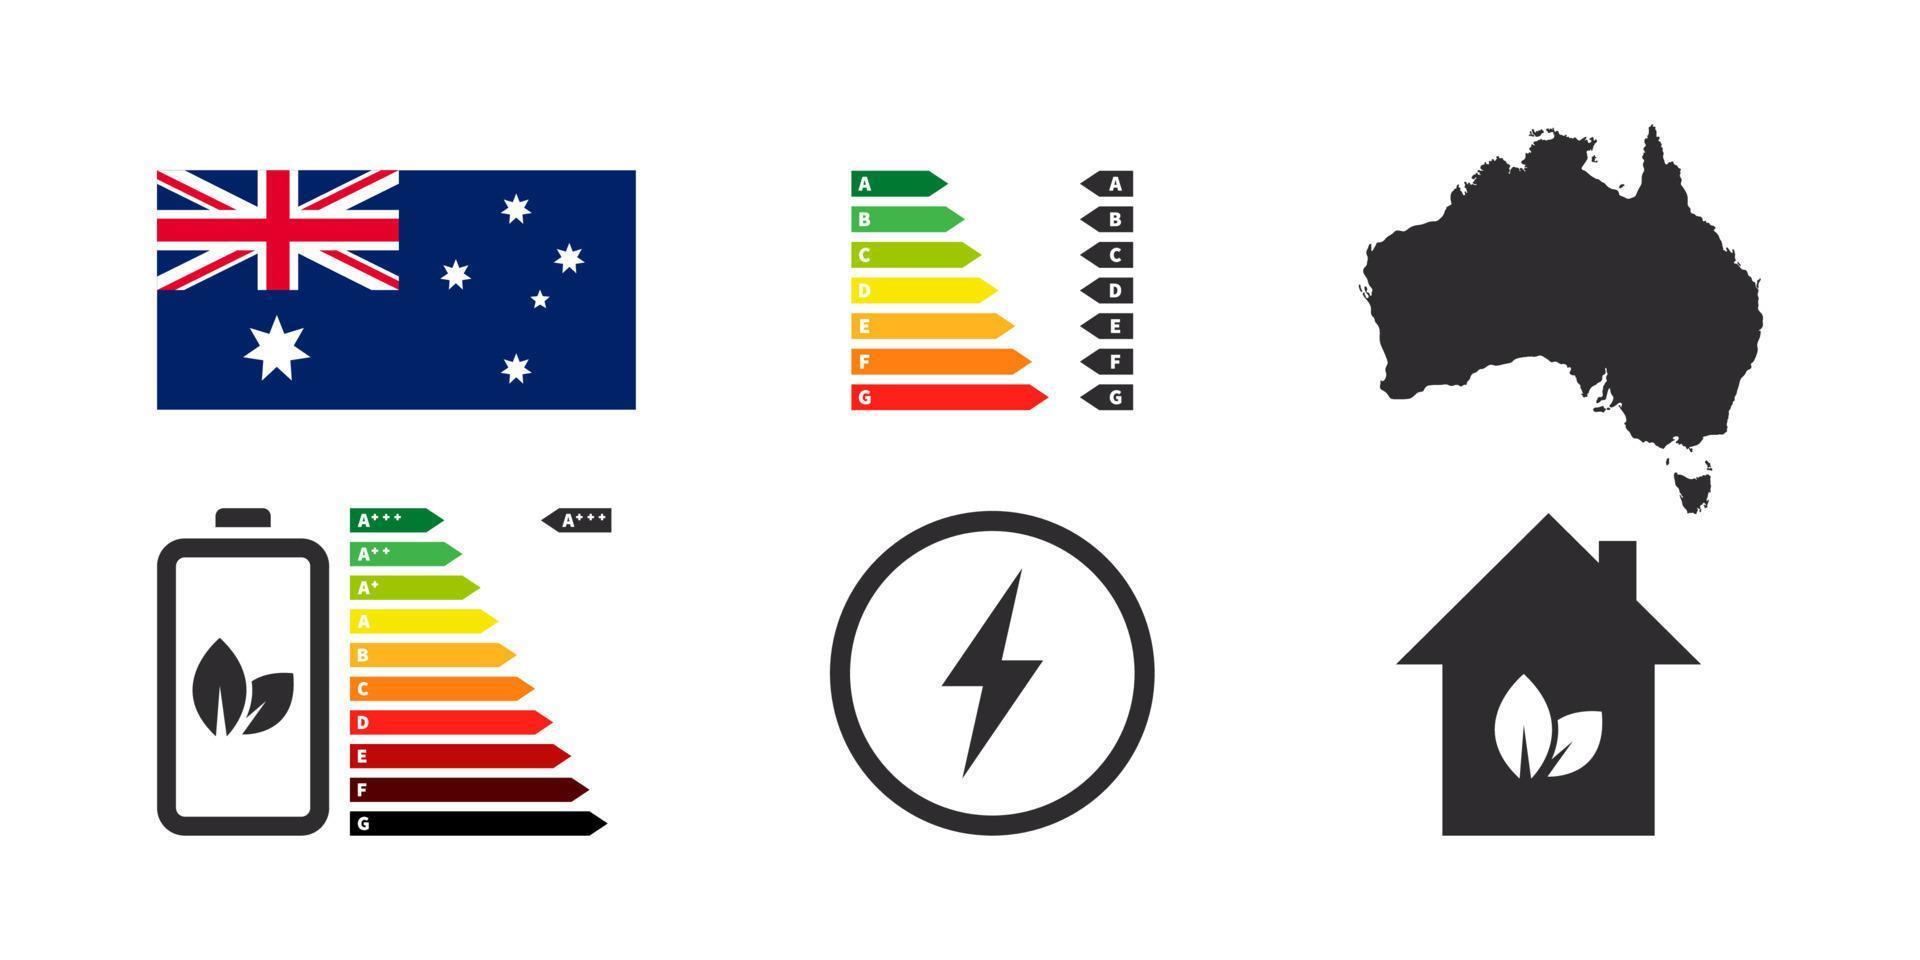 insignias de eficiencia energética de australia. iconos de rendimiento energético. tabla de calificación energética. ilustración vectorial vector